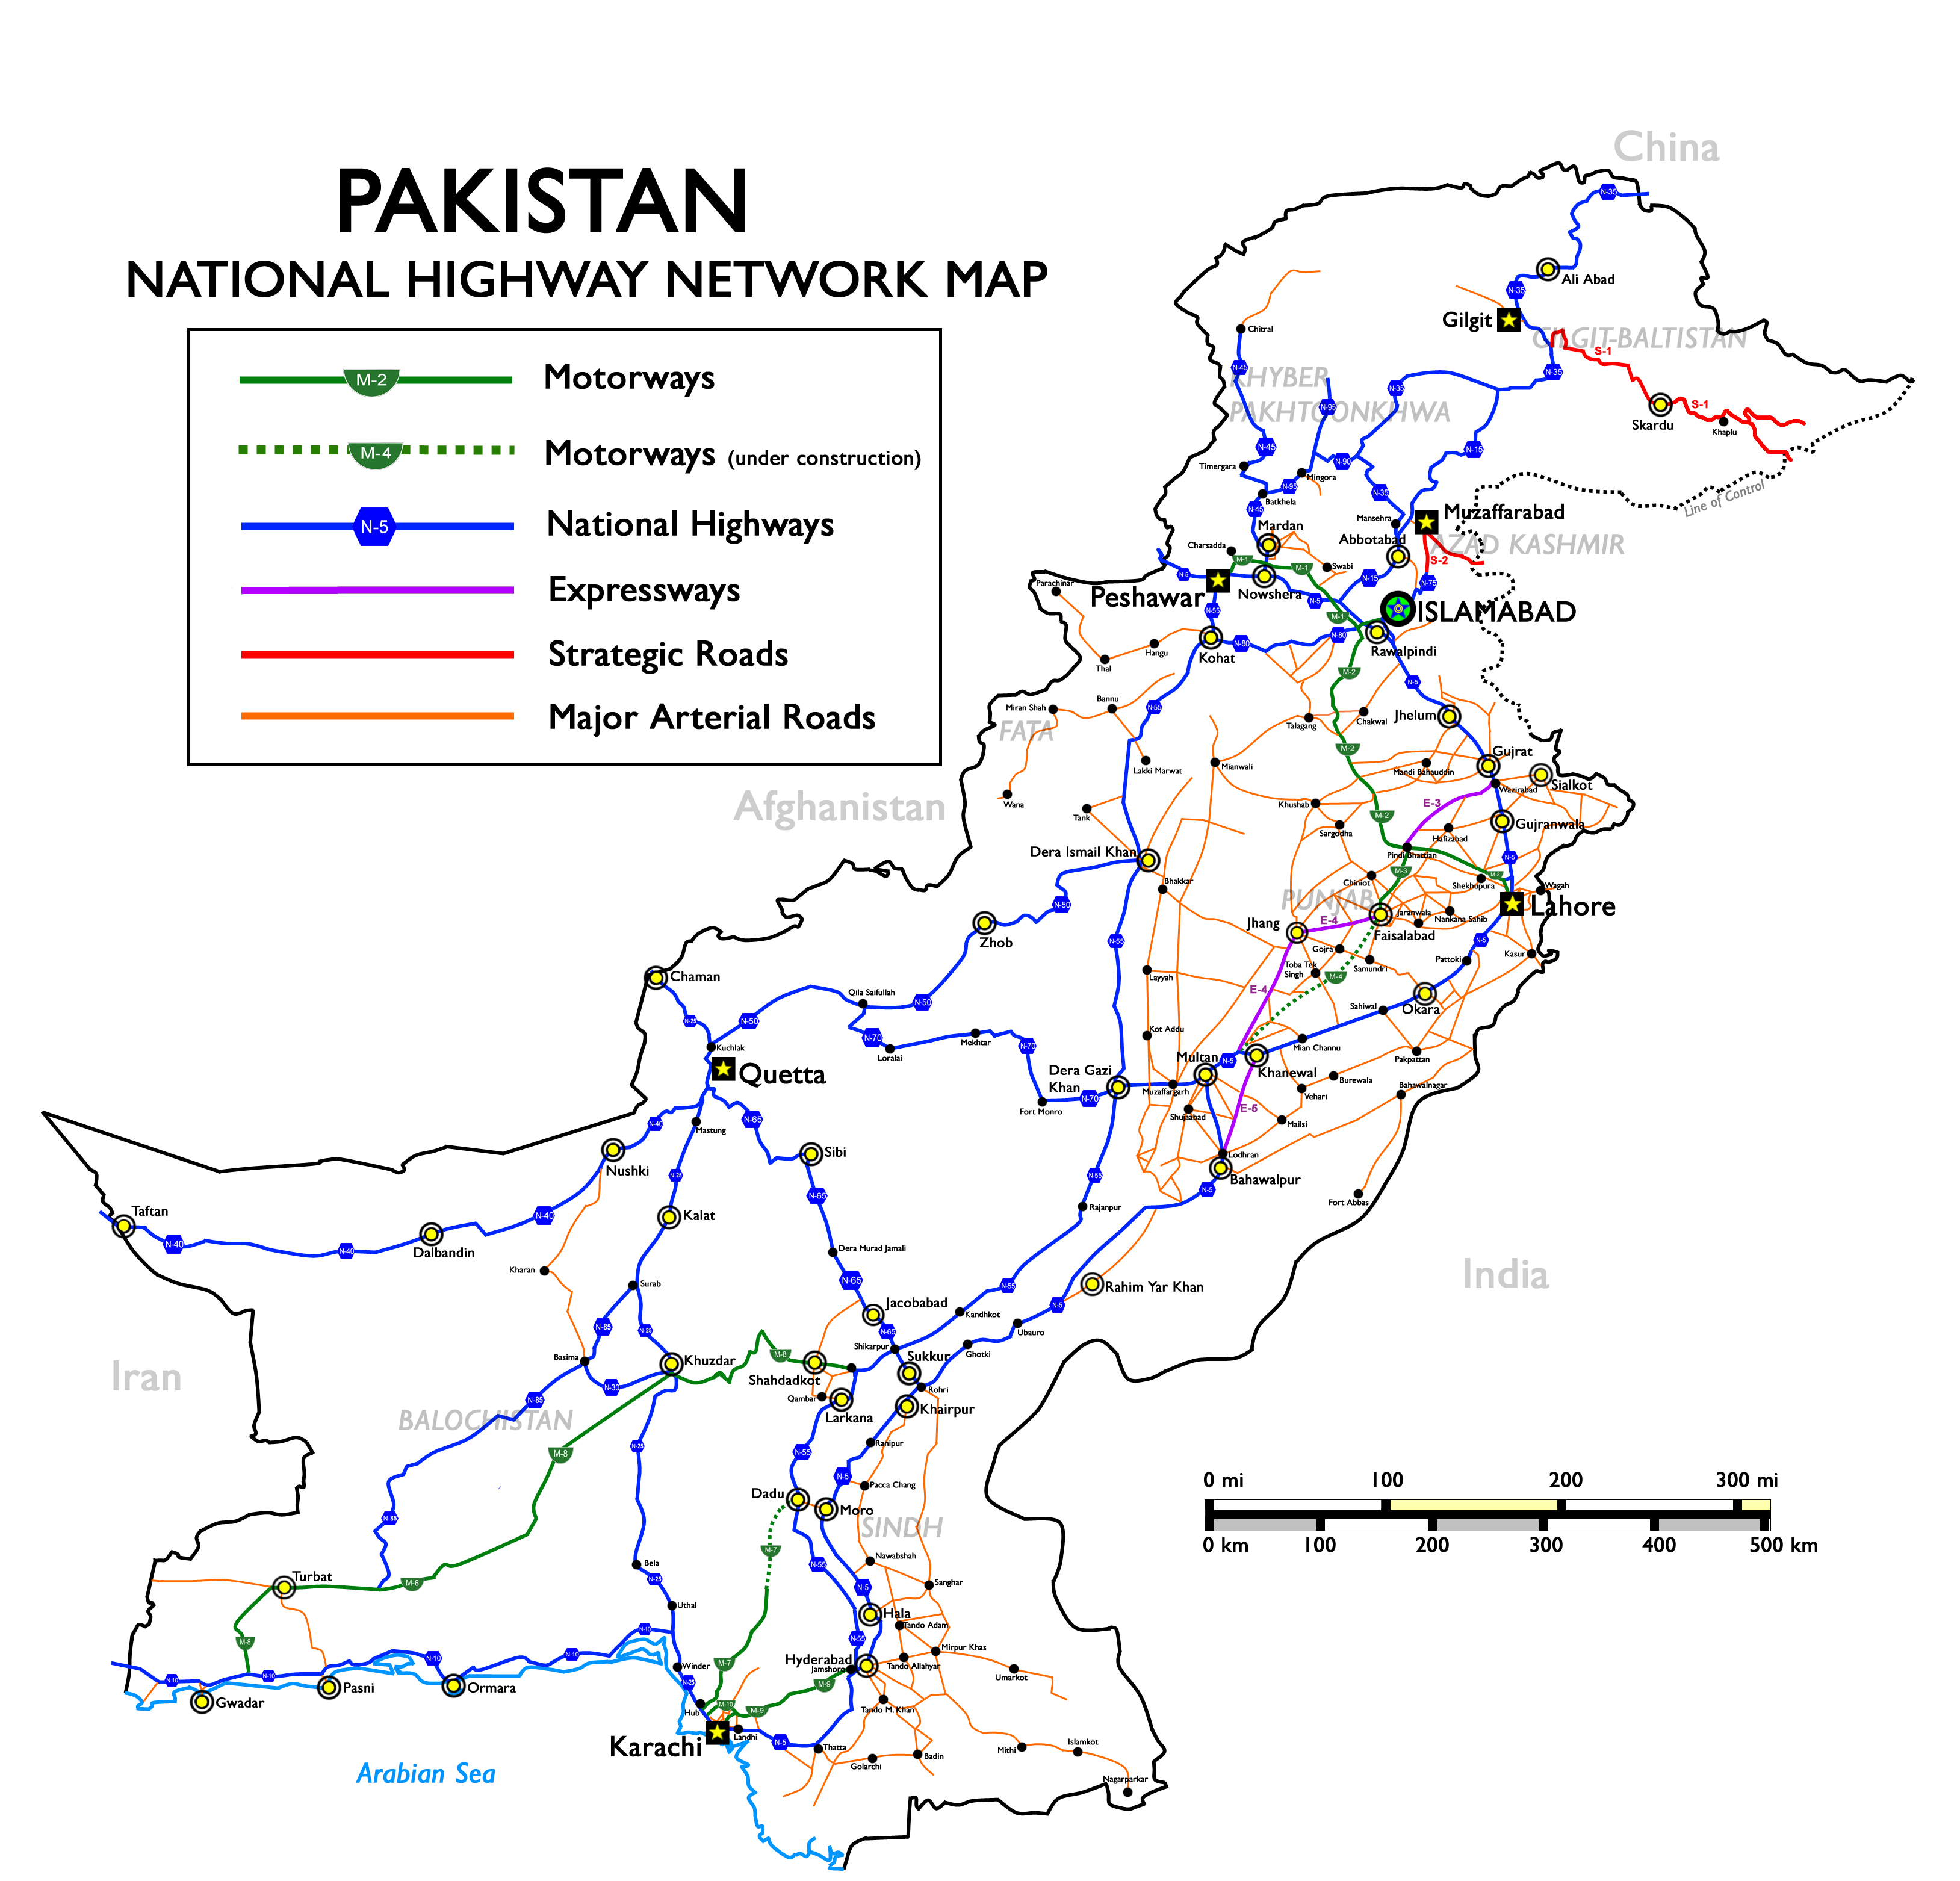 Pakistan_Nationalhighways.PNG